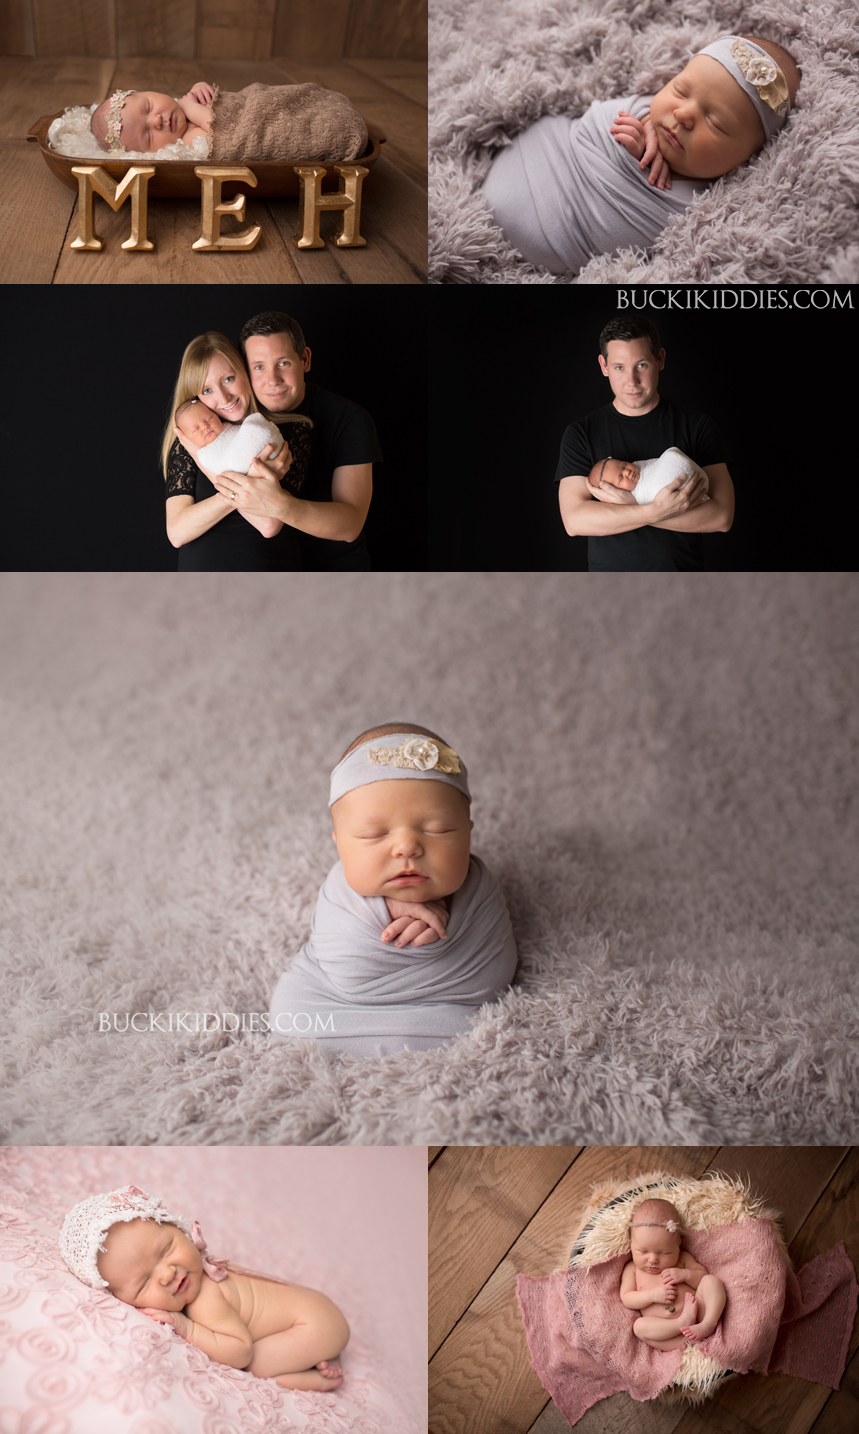 Newborn Photographer Columbus Ohio Baby Photographer Buckikiddies Photography capturing your newborn